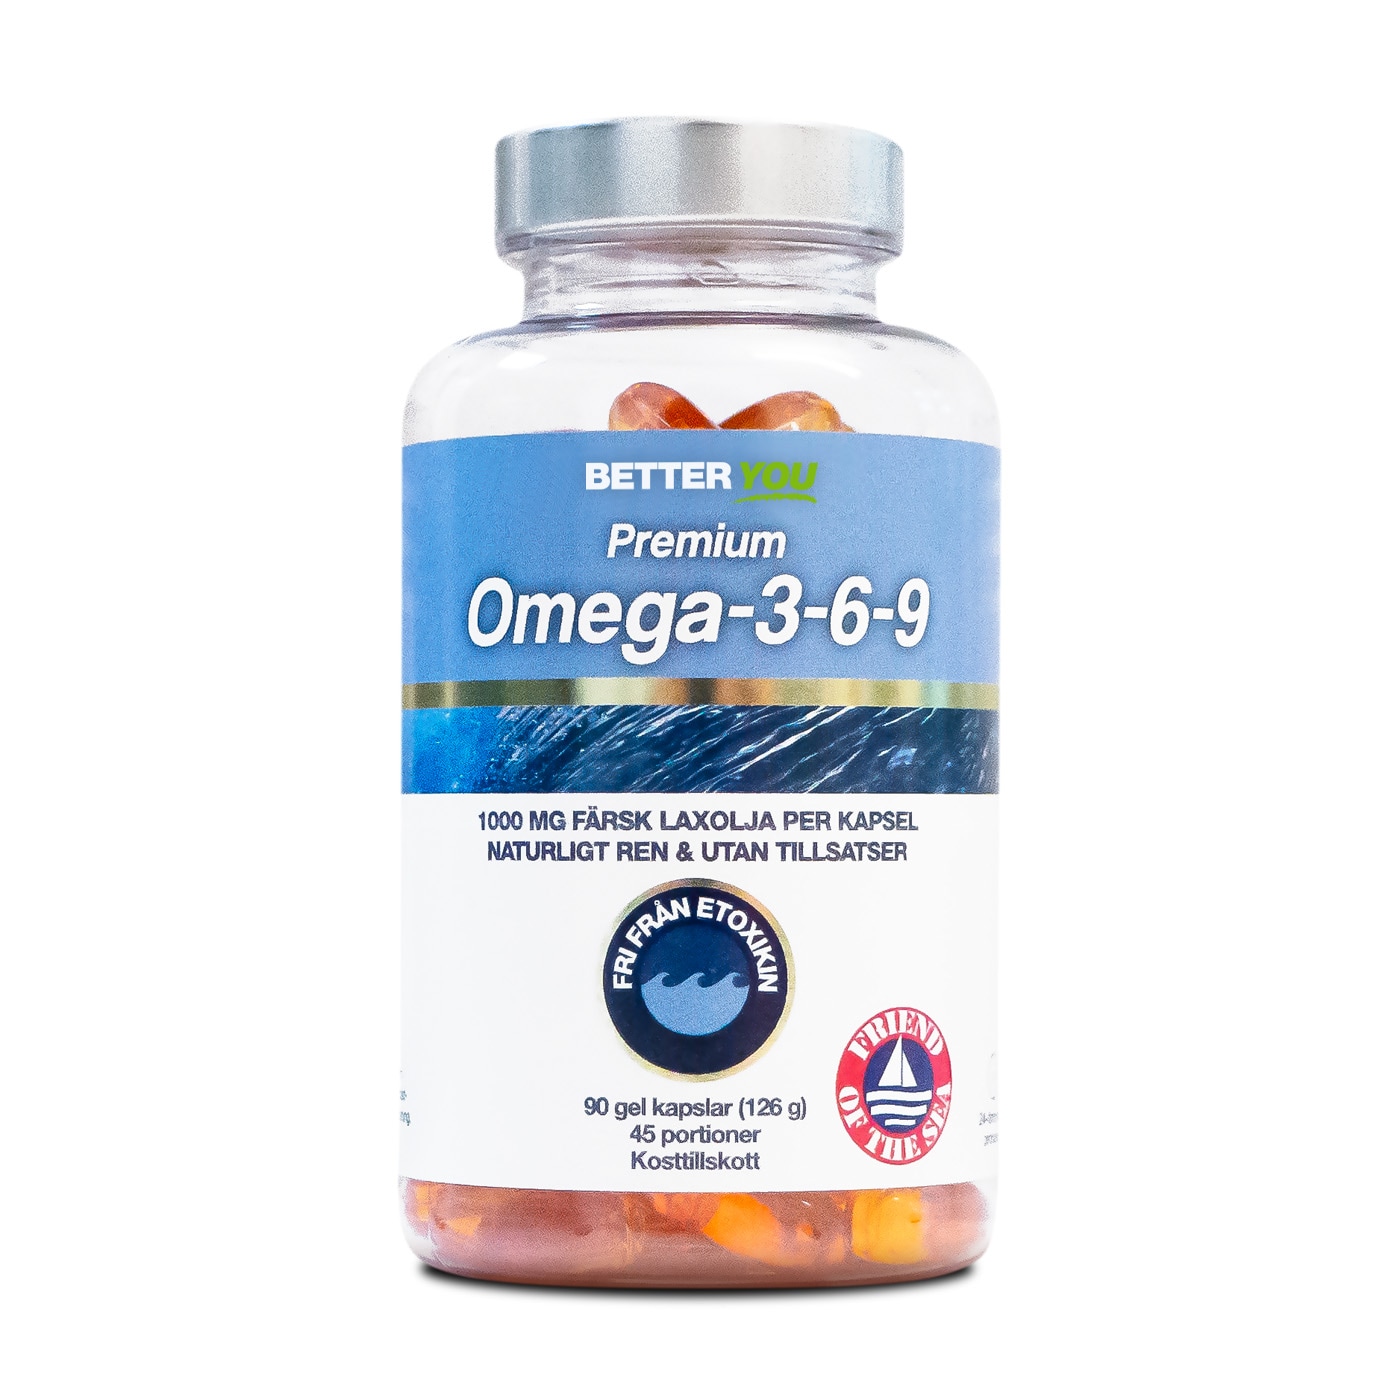 Premium Omega-3-6-9